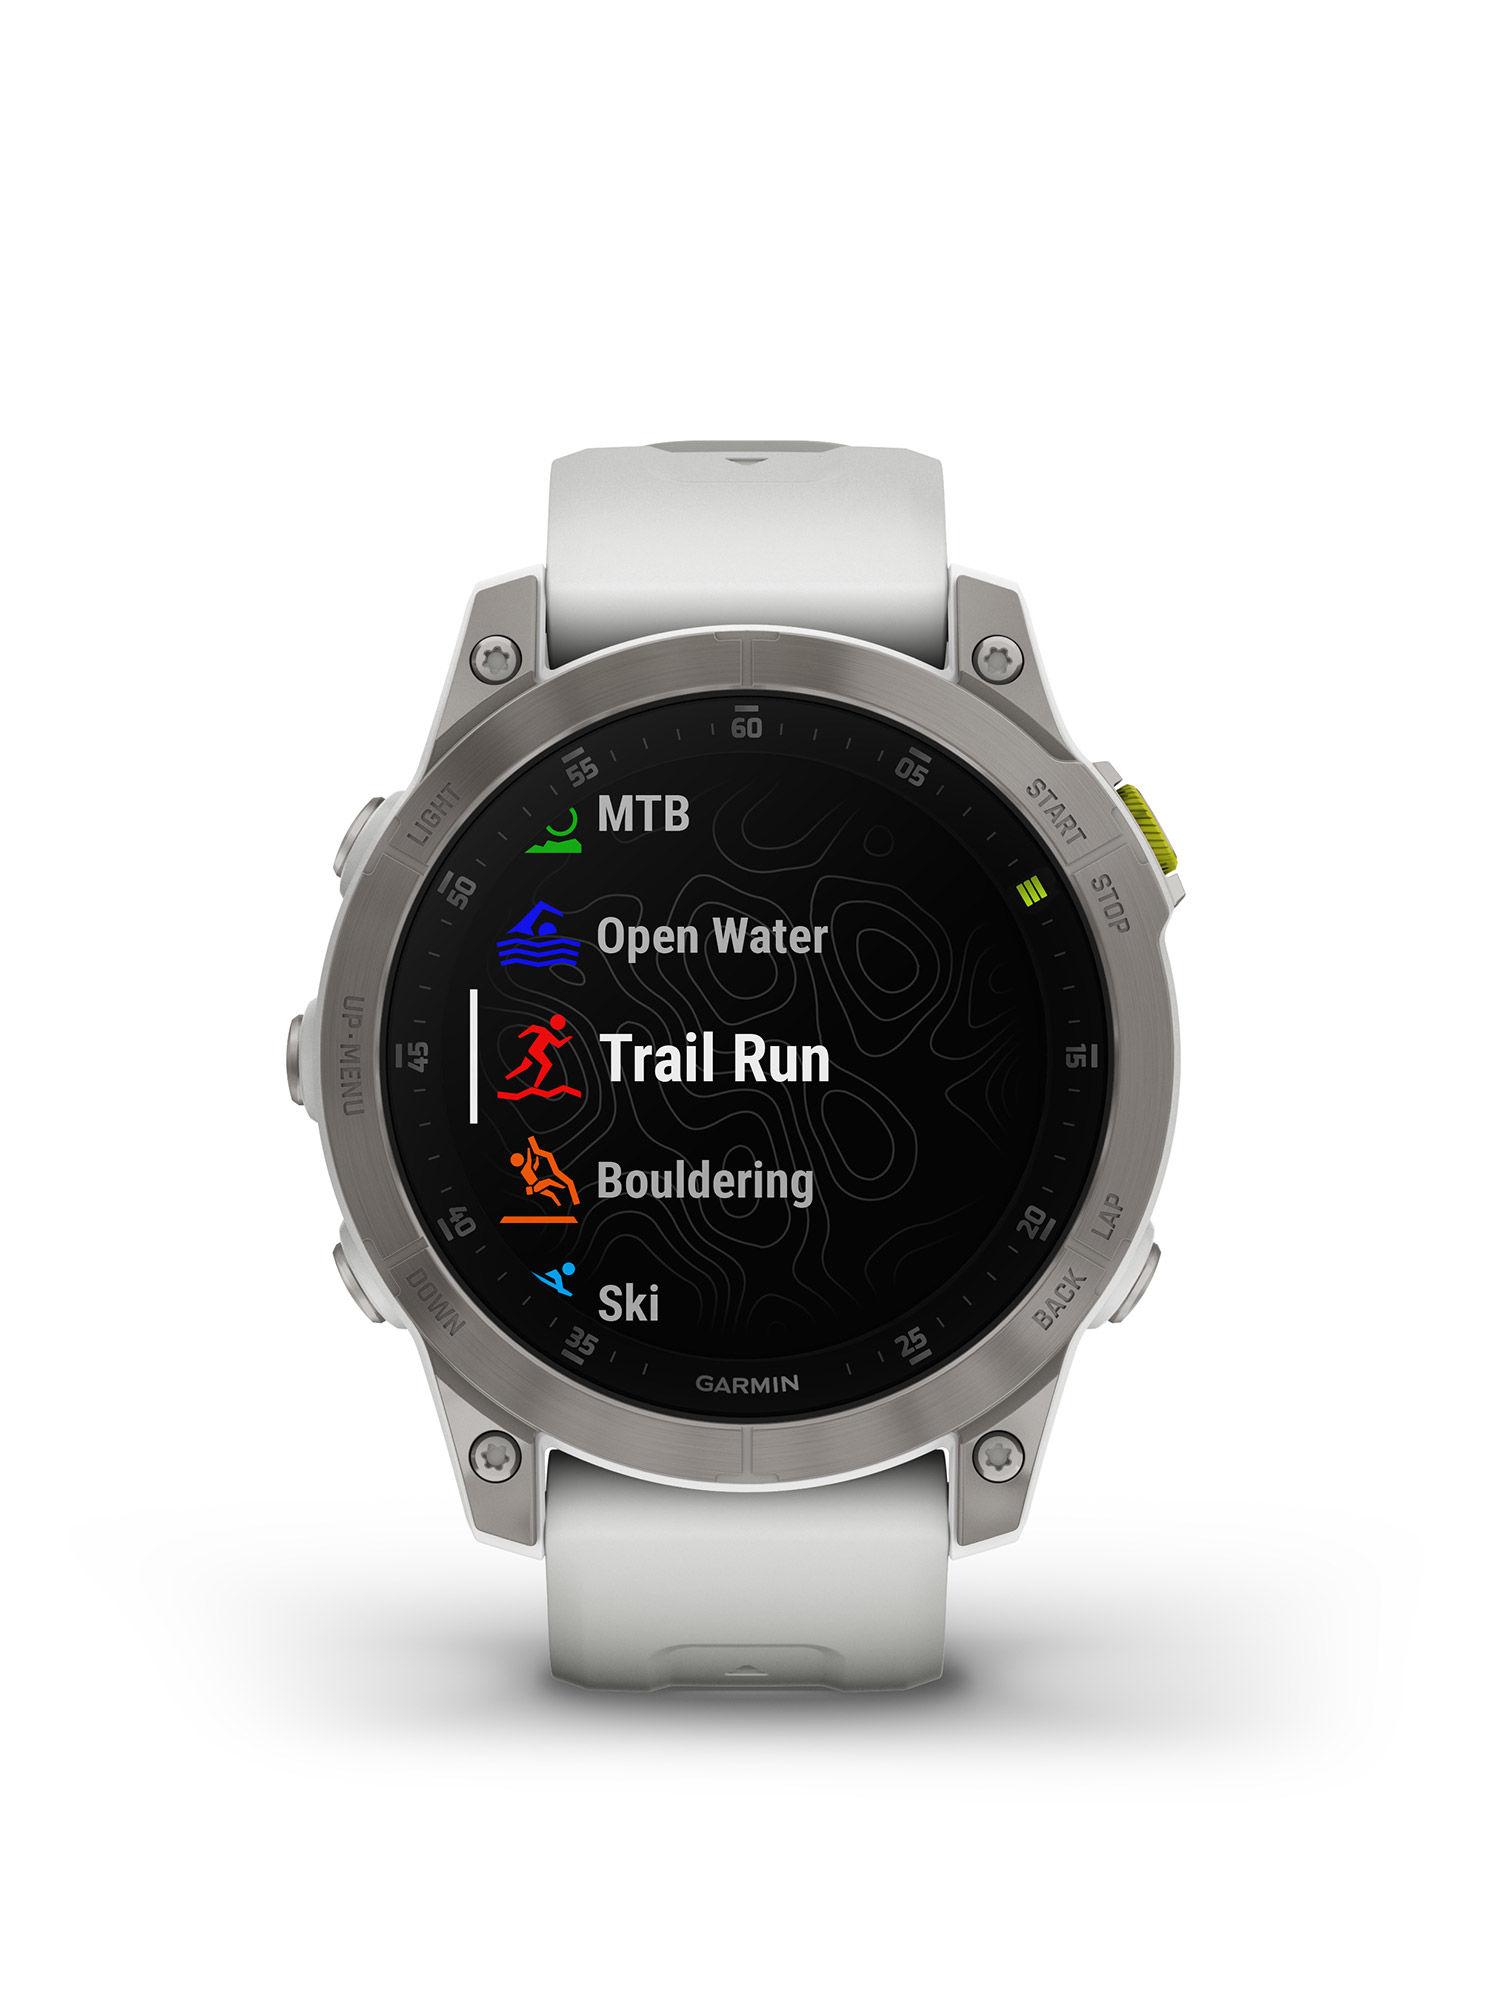 Epix Gen 2 Premium Active Smartwatch Wellness Features Amoled Display